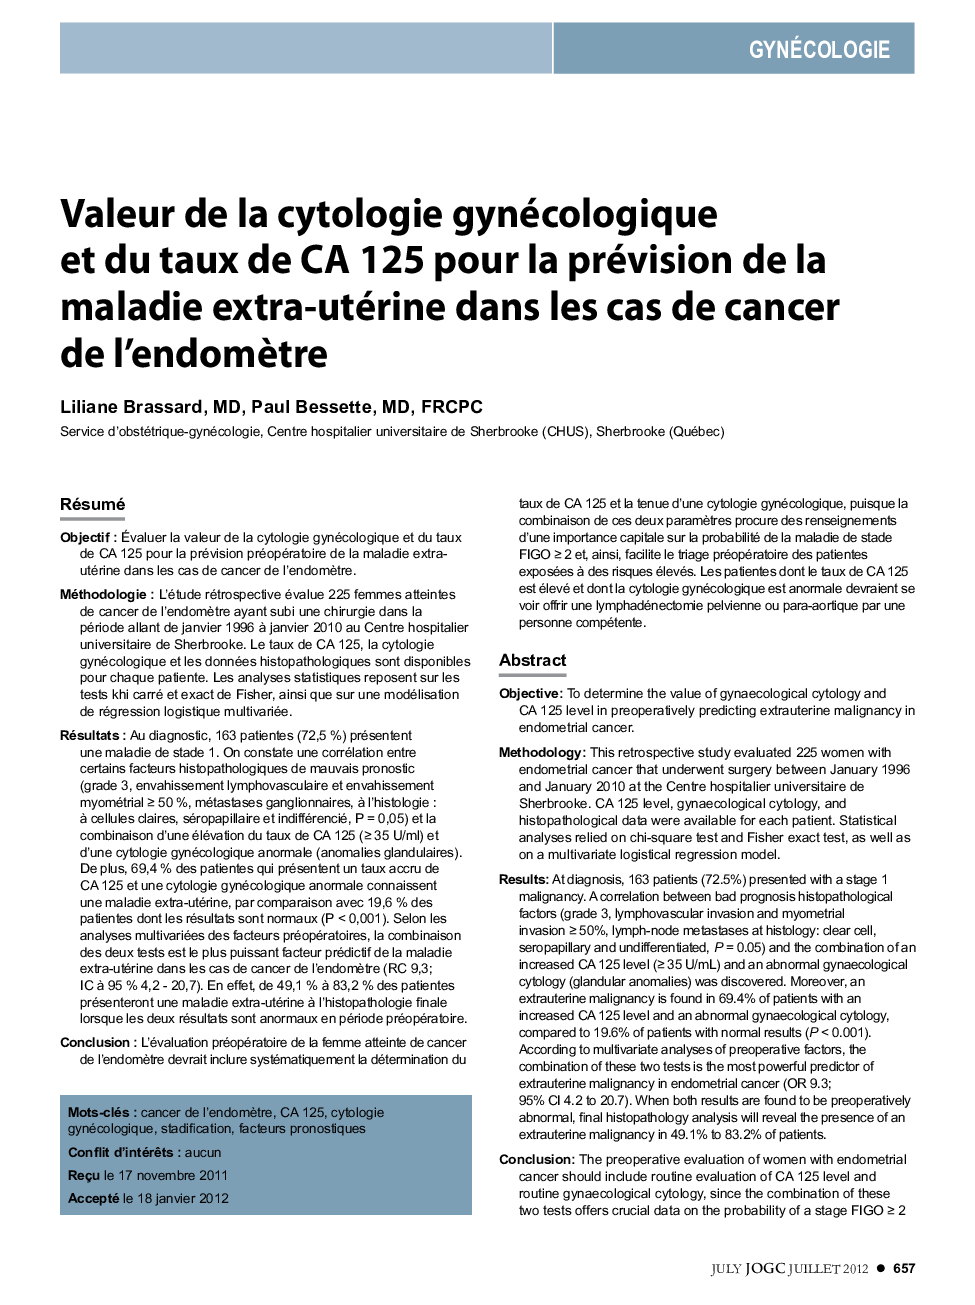 Valeur de la cytologie gynécologique et du taux de CA 125 pour la prévision de la maladie extra-utérine dans les cas de cancer de l'endomÃ¨tre